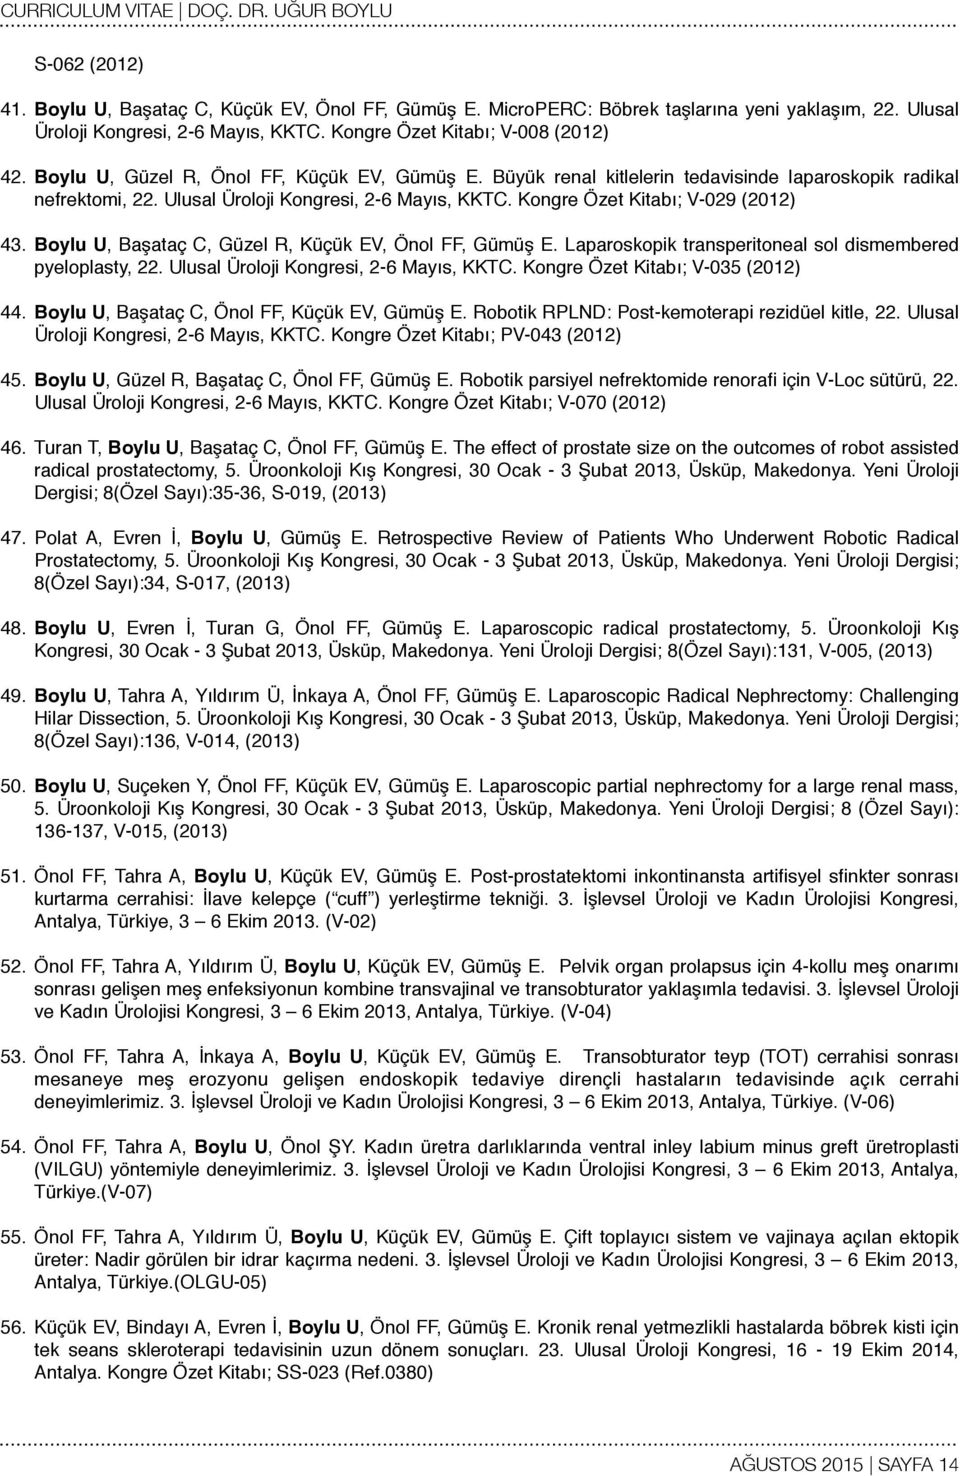 Boylu U, Başataç C, Güzel R, Küçük EV, Önol FF, Gümüş E. Laparoskopik transperitoneal sol dismembered pyeloplasty, 22. Ulusal Üroloji Kongresi, 2-6 Mayıs, KKTC. Kongre Özet Kitabı; V-035 (2012) 44.